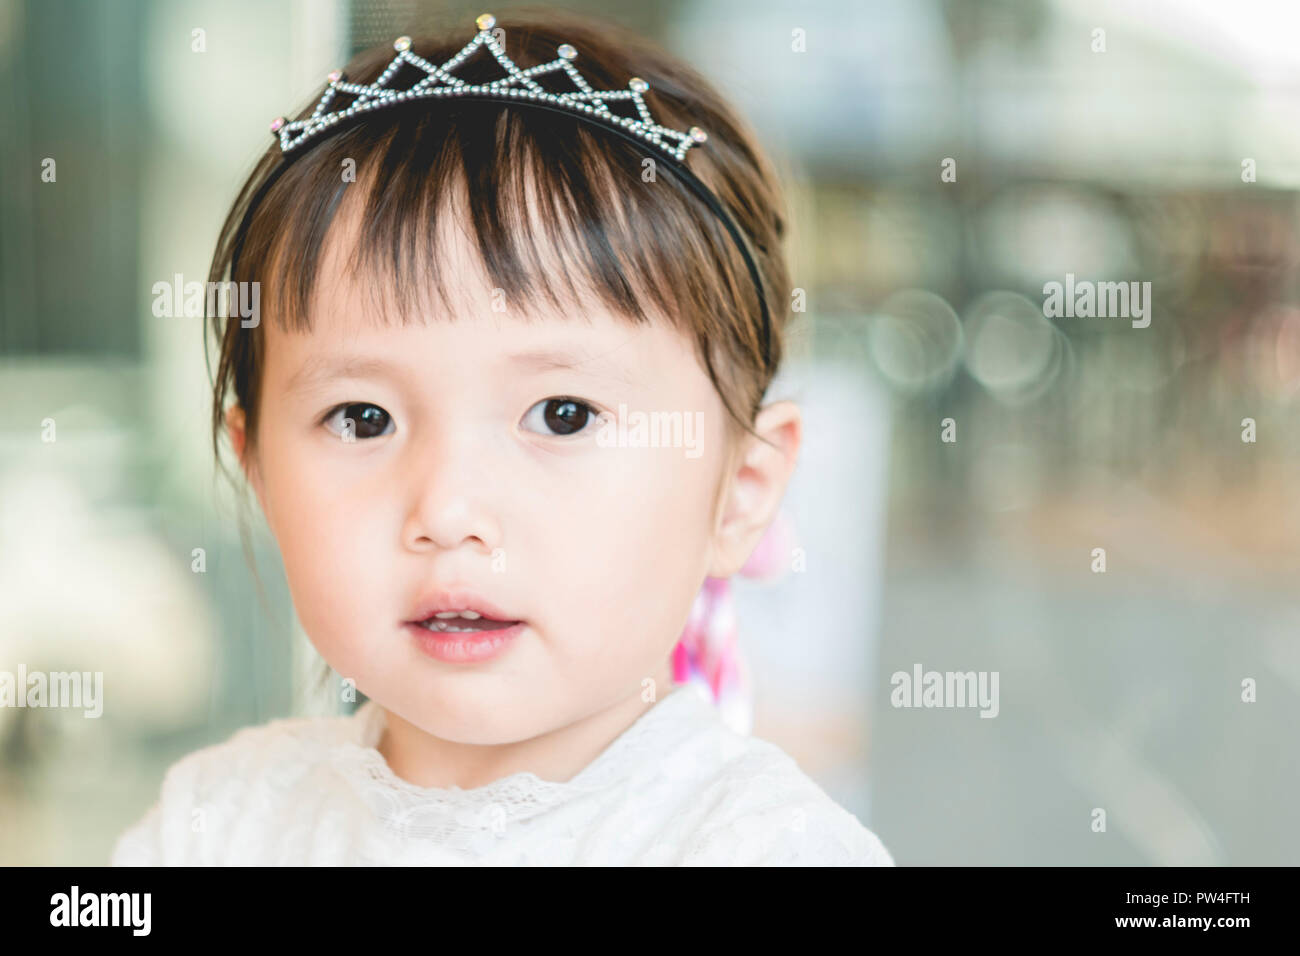 Niña gracioso rostro sonriente,retrato de alegres niños asiáticos adorable encantadora mirando a la cámara con una sonrisa Foto de stock